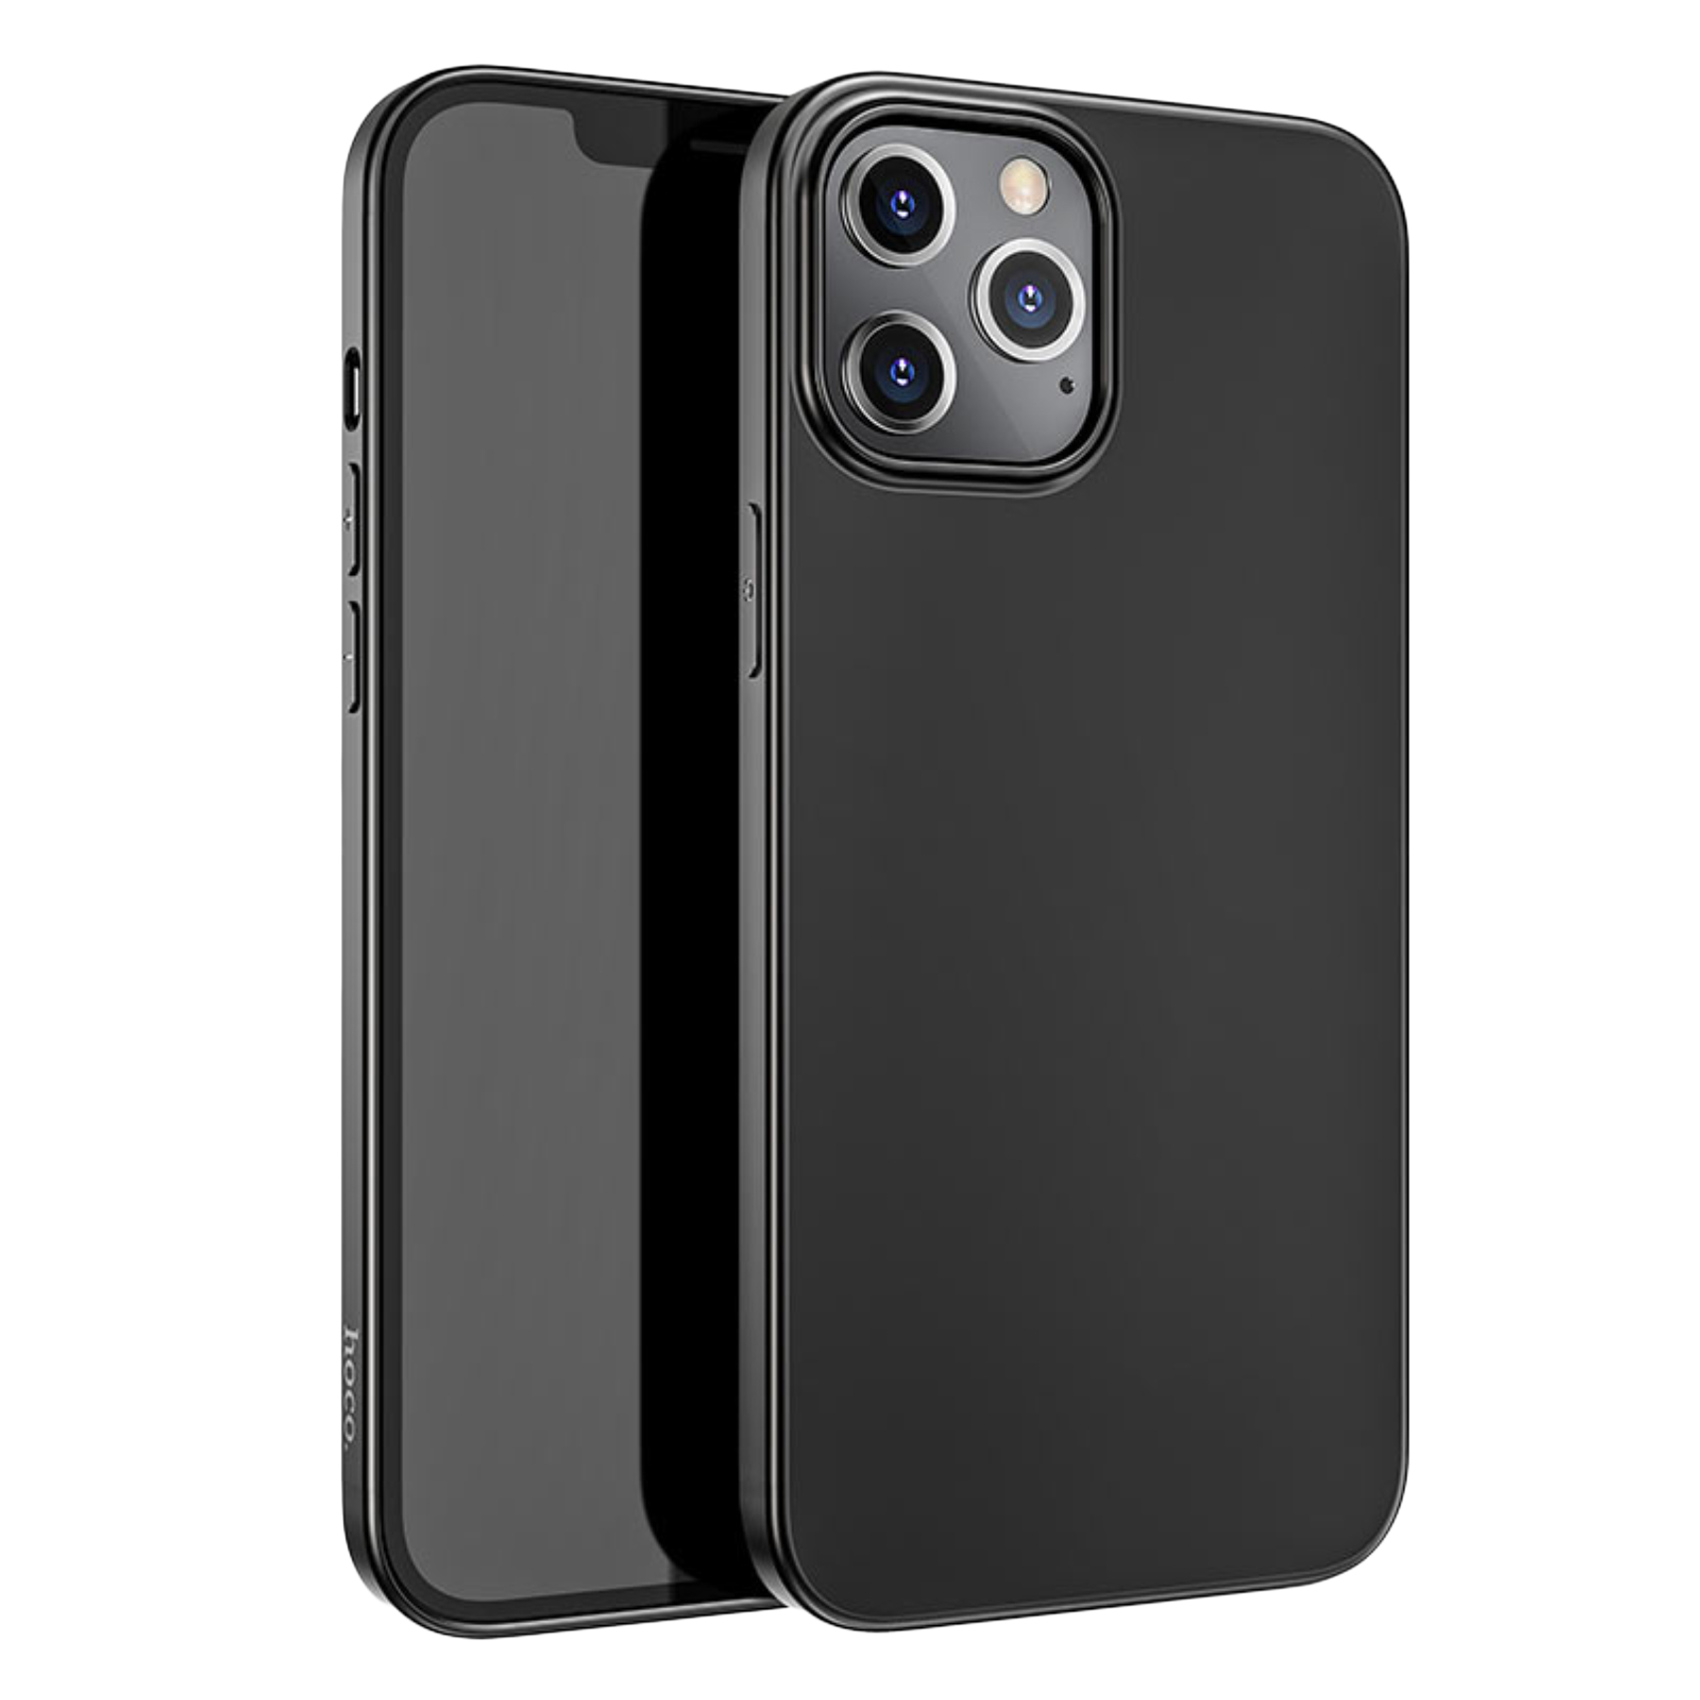 Ezone Hoco Apple iPhone 11 Max Pro Case Cover Black